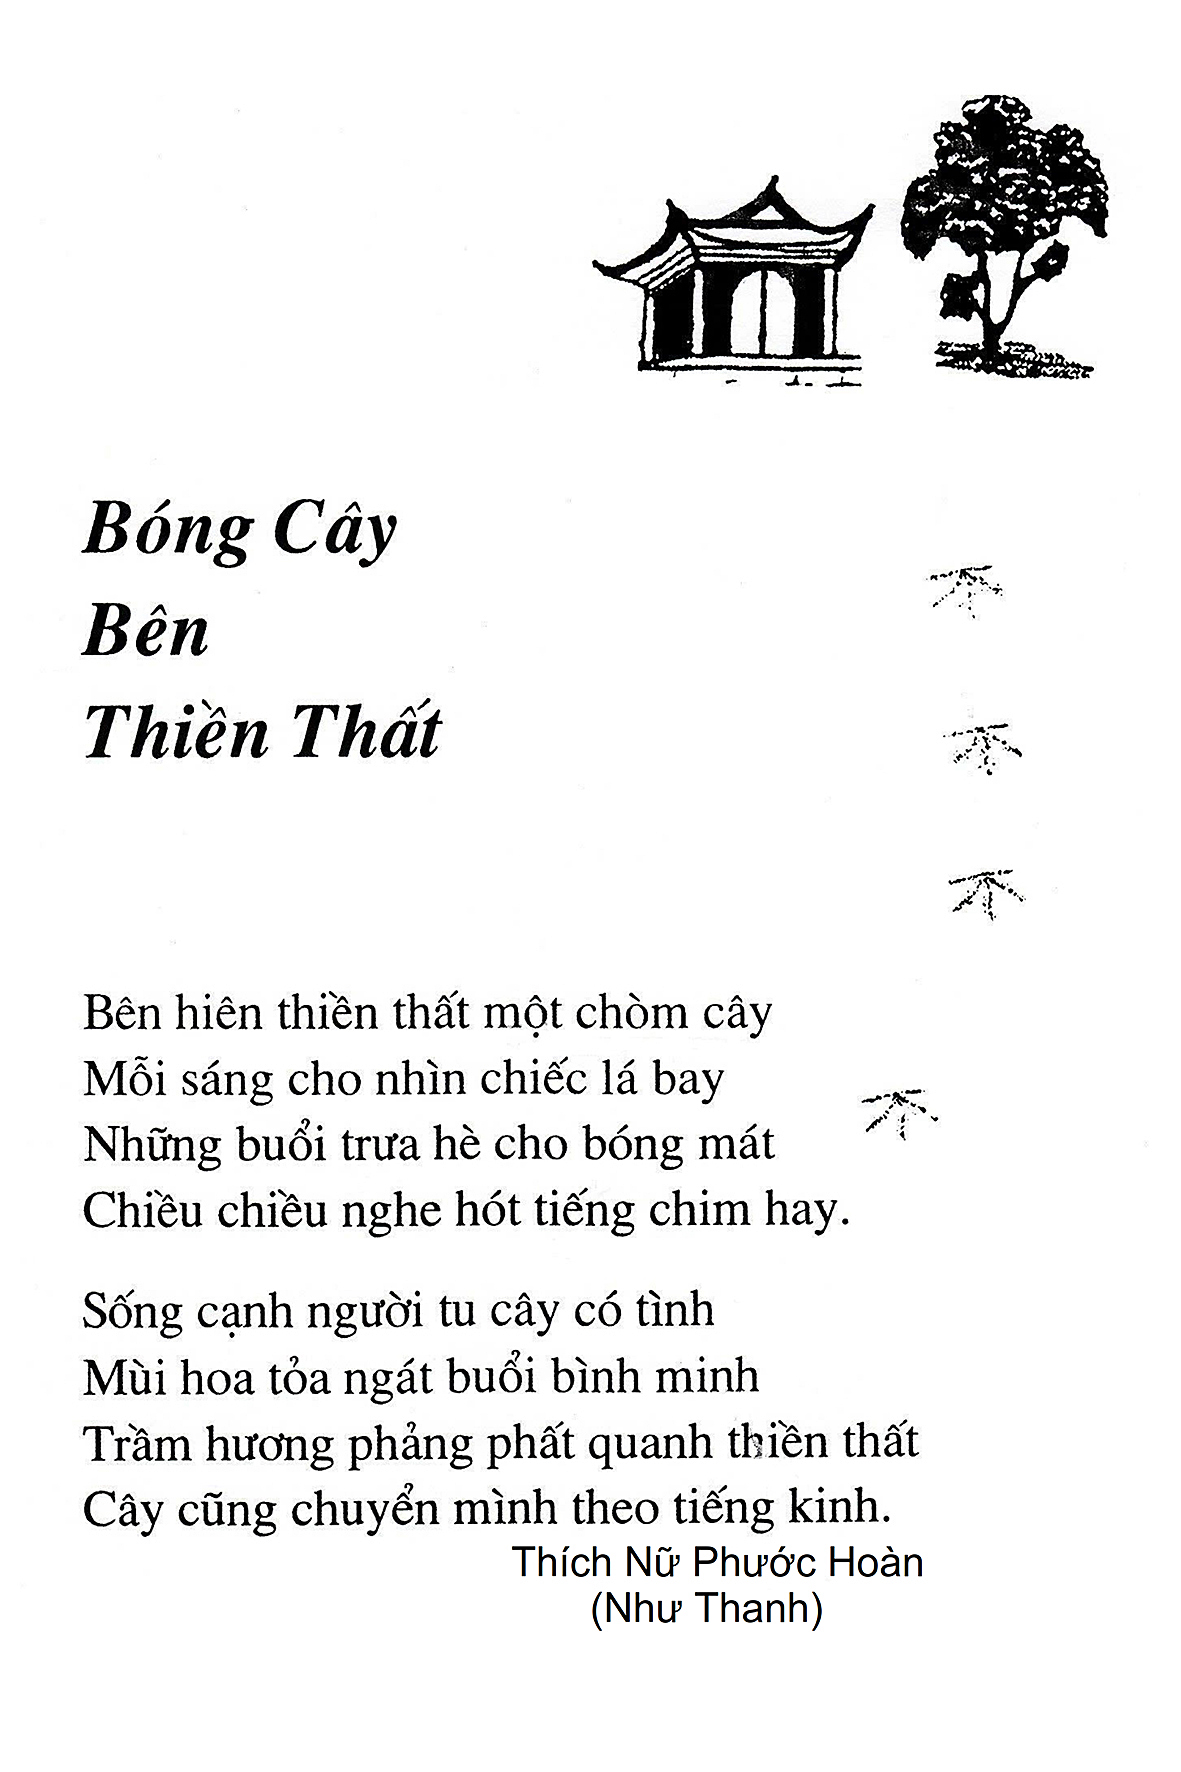 Bong Cay Ben Thien That